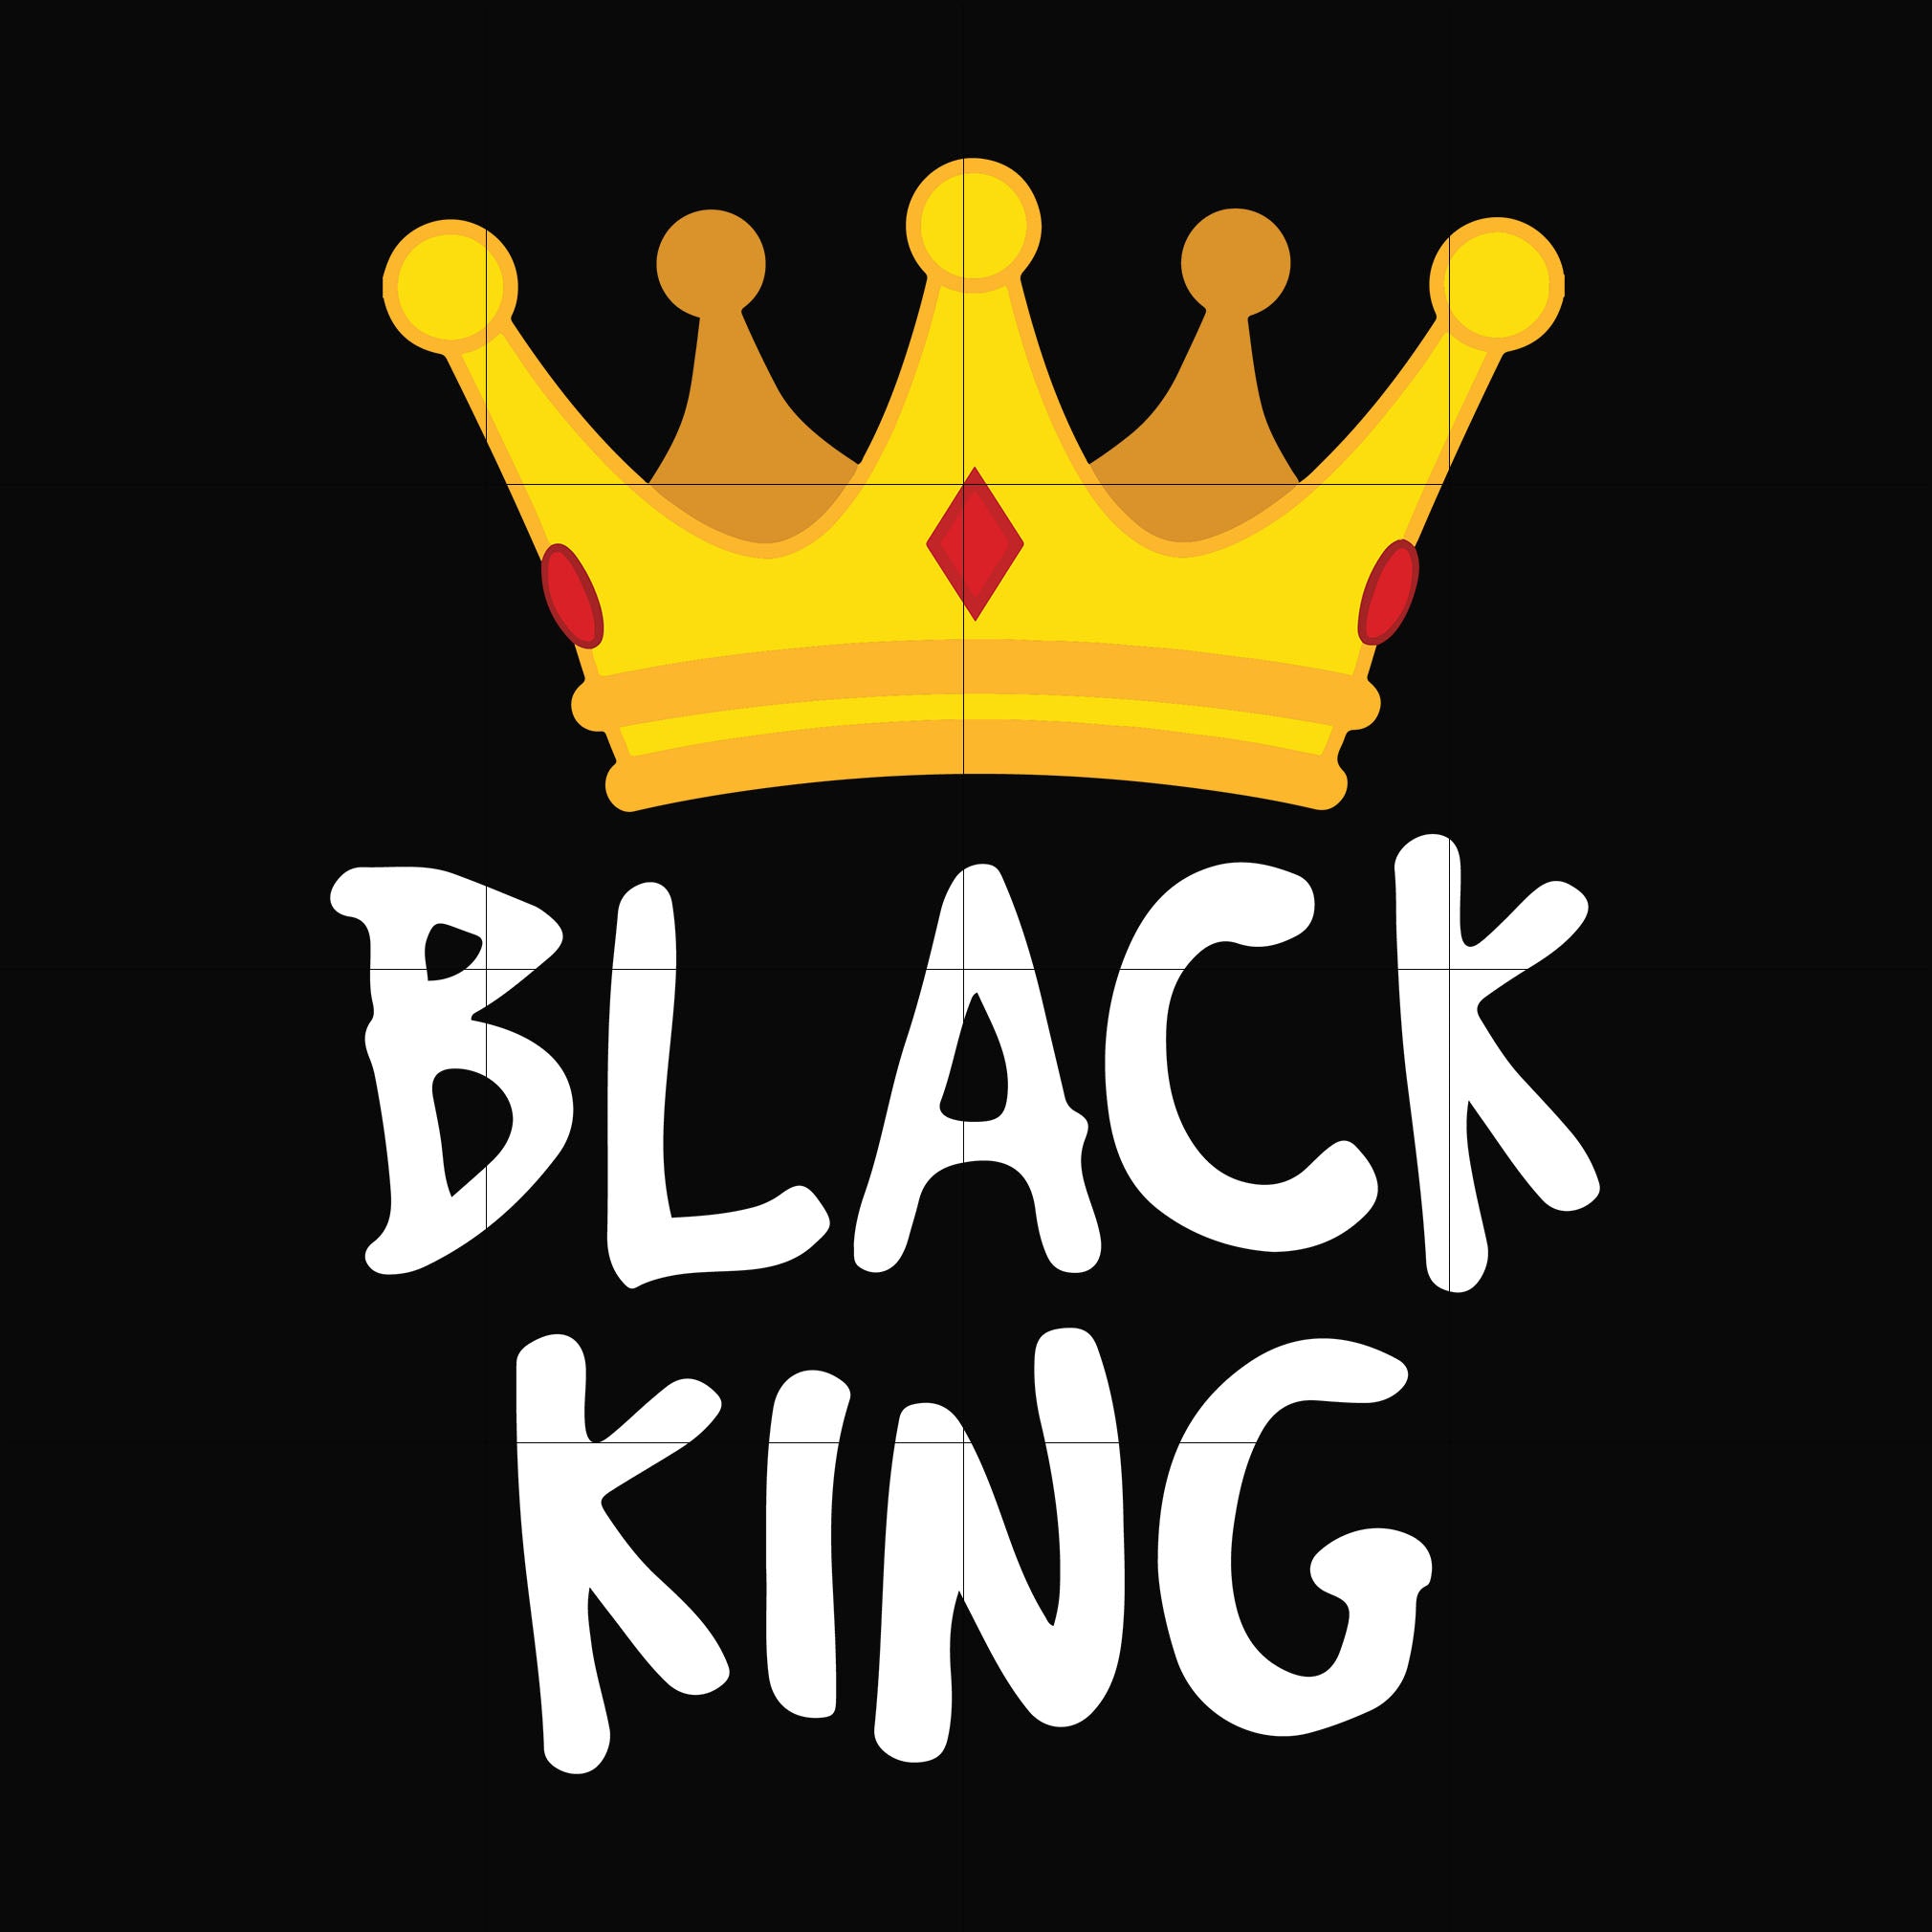 Black king svg, png, dxf, eps digital file TD116